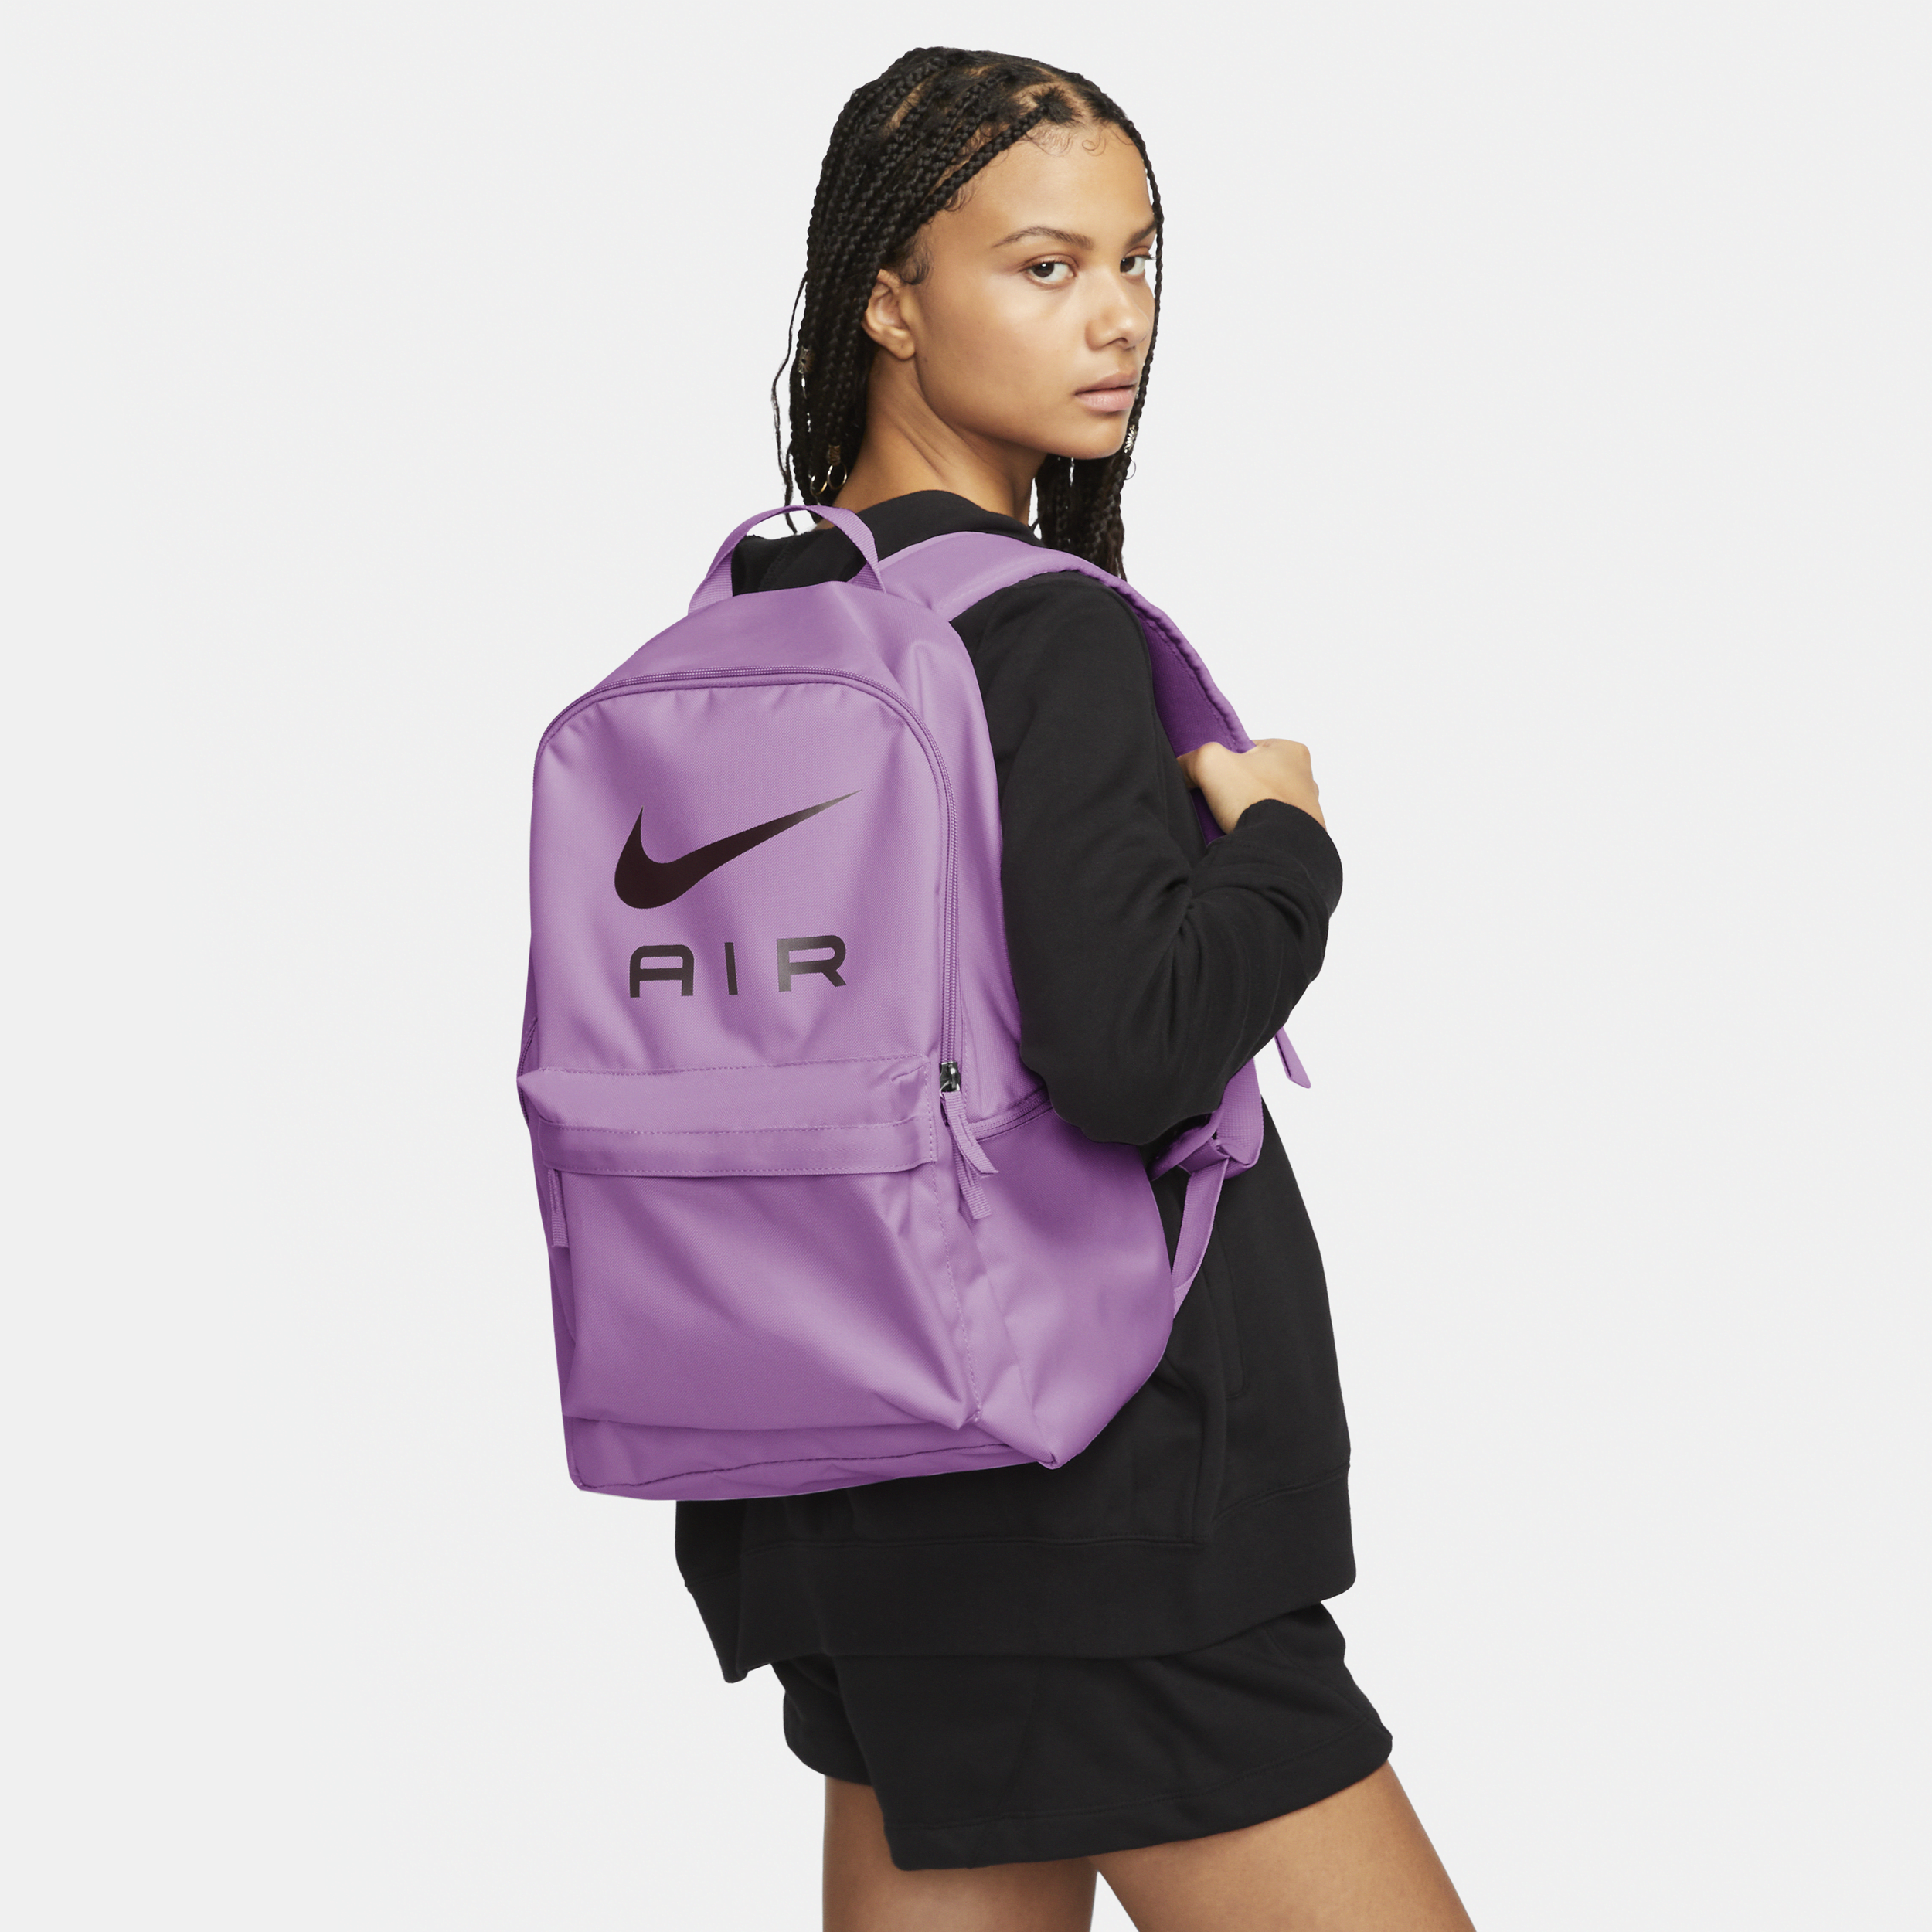 Nike Unisex Heritage Backpack (25l) In Purple